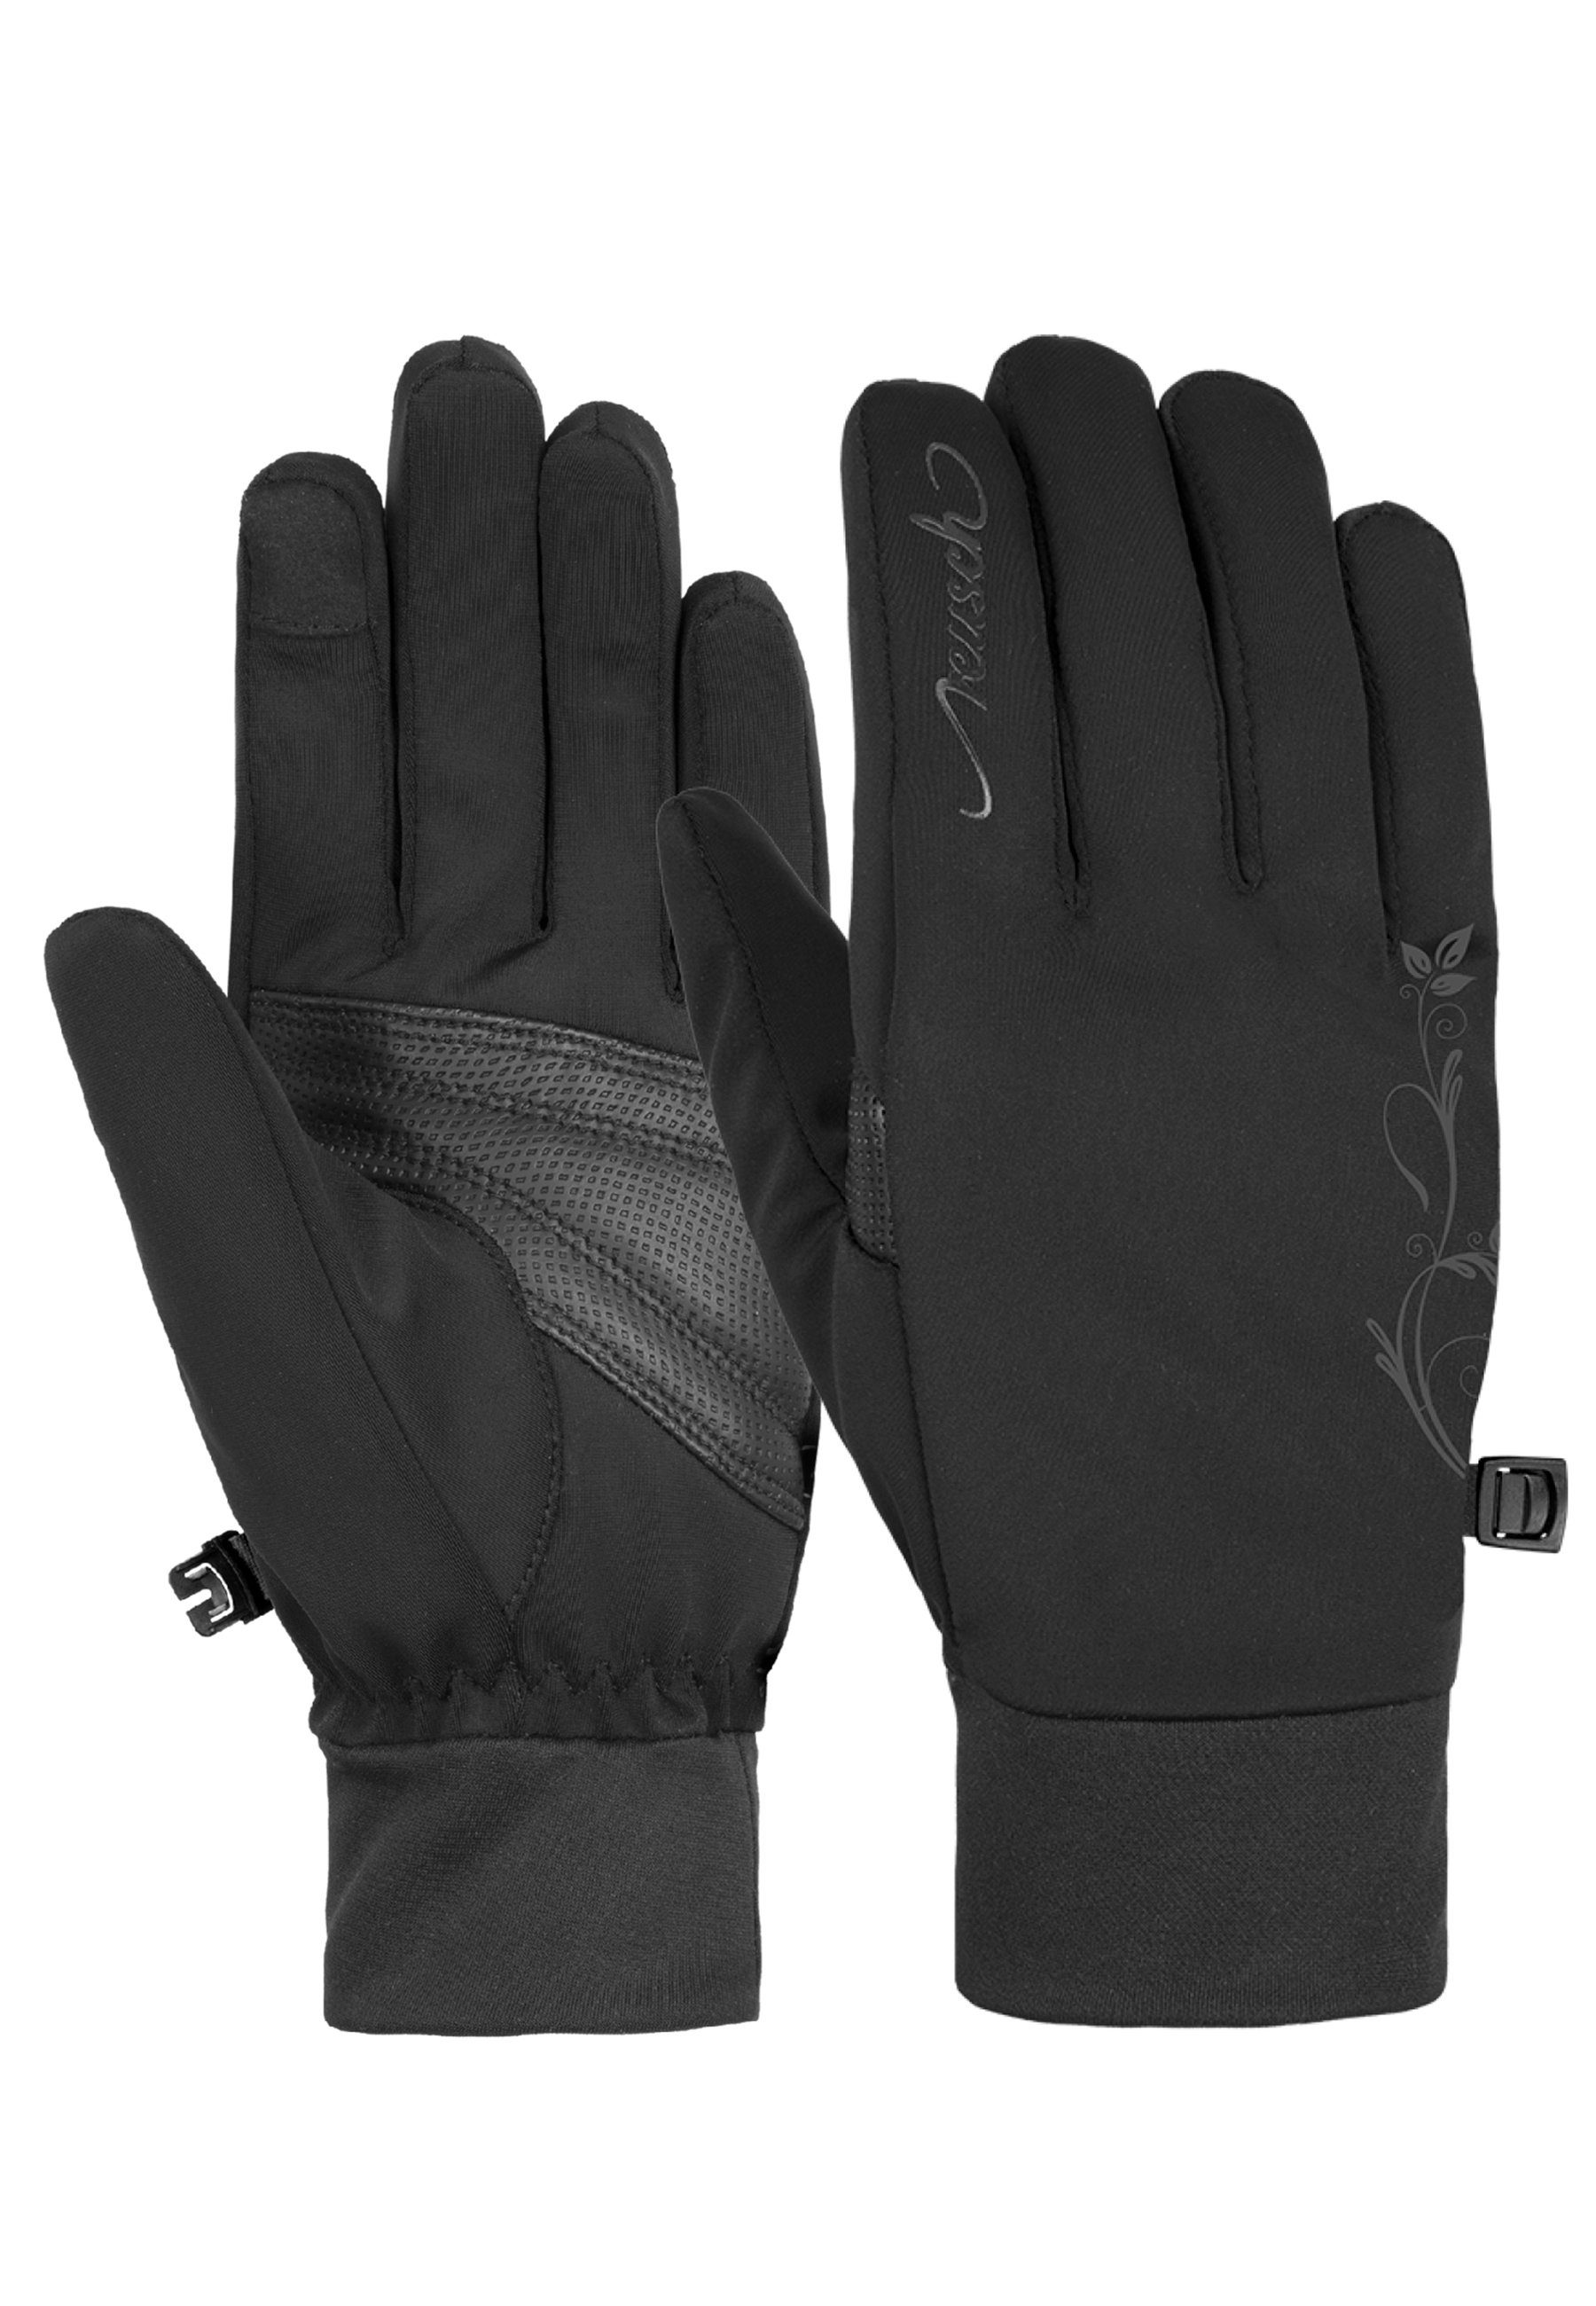 Reusch Skihandschuhe Saskia Touch-tec mit verspielten Design-Elementen schwarz-schwarz | Handschuhe